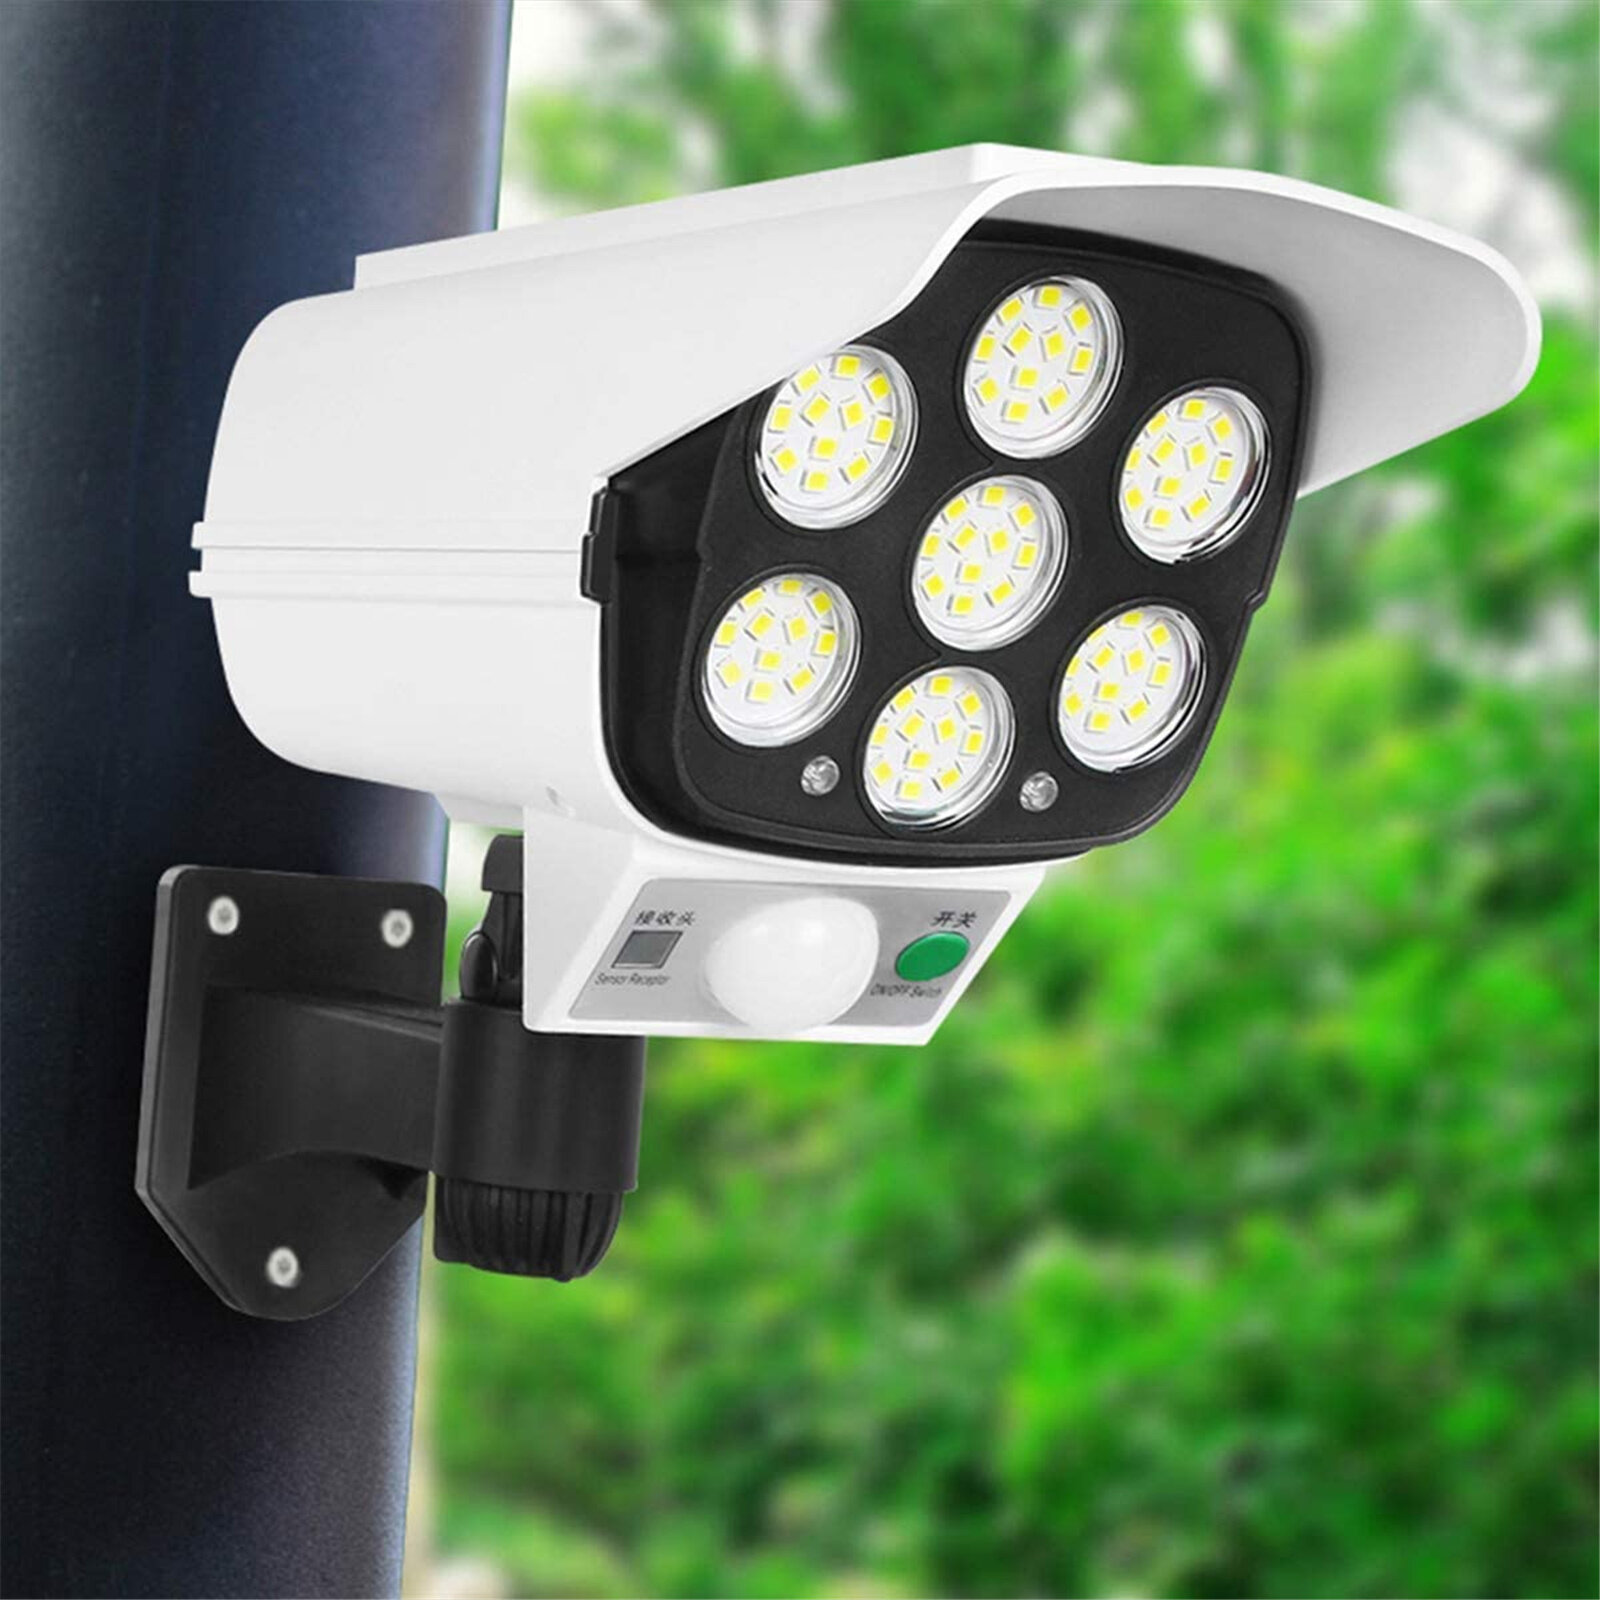 LED Battery Power Wall Light PIR Motion Sensor Outdoor Garden Yard Security Lamp 